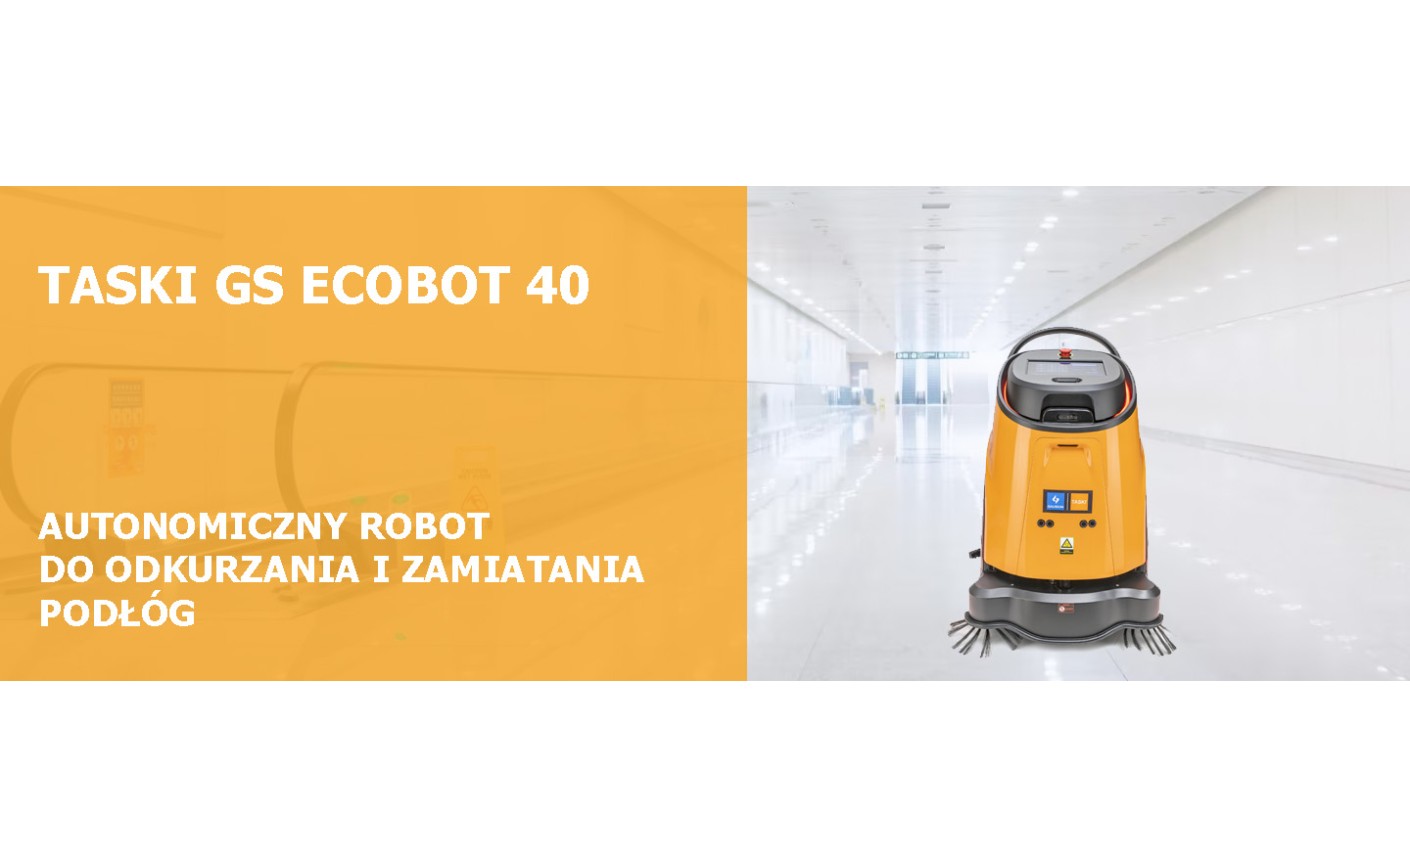 TASKI GS Ecobot 40: Autonomiczny robot do odkurzania i zamiatania podłóg